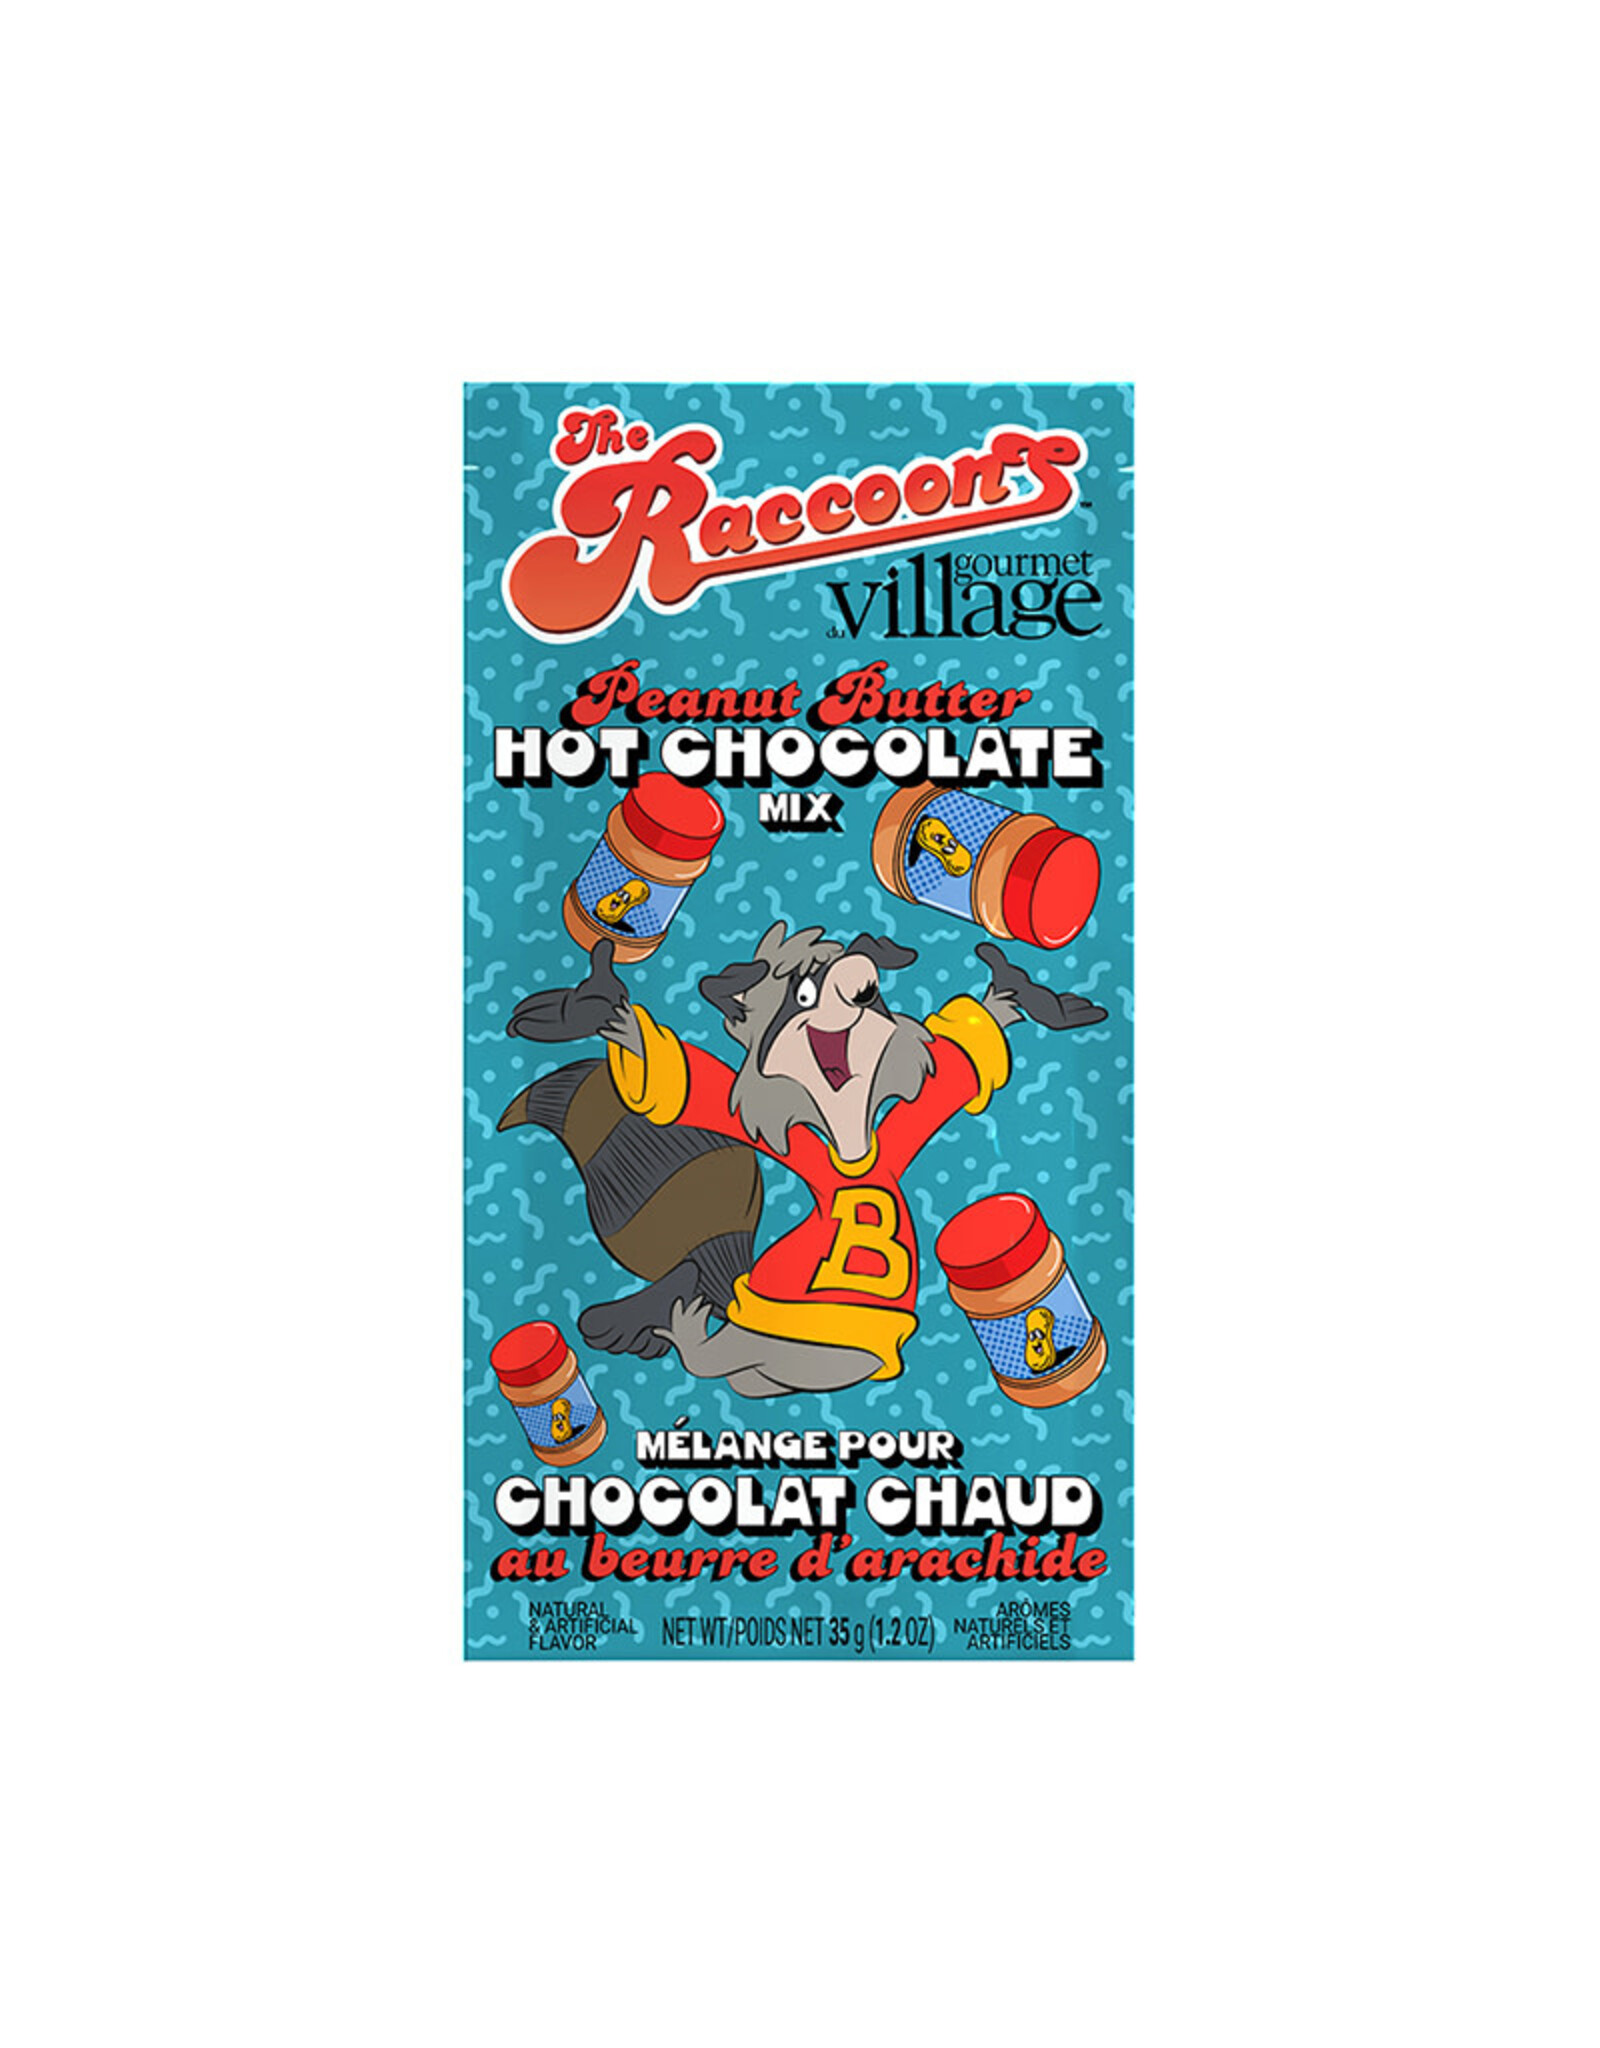 Gourmet Village Raccoons “Bert” Peanut Butter Hot Chocolate